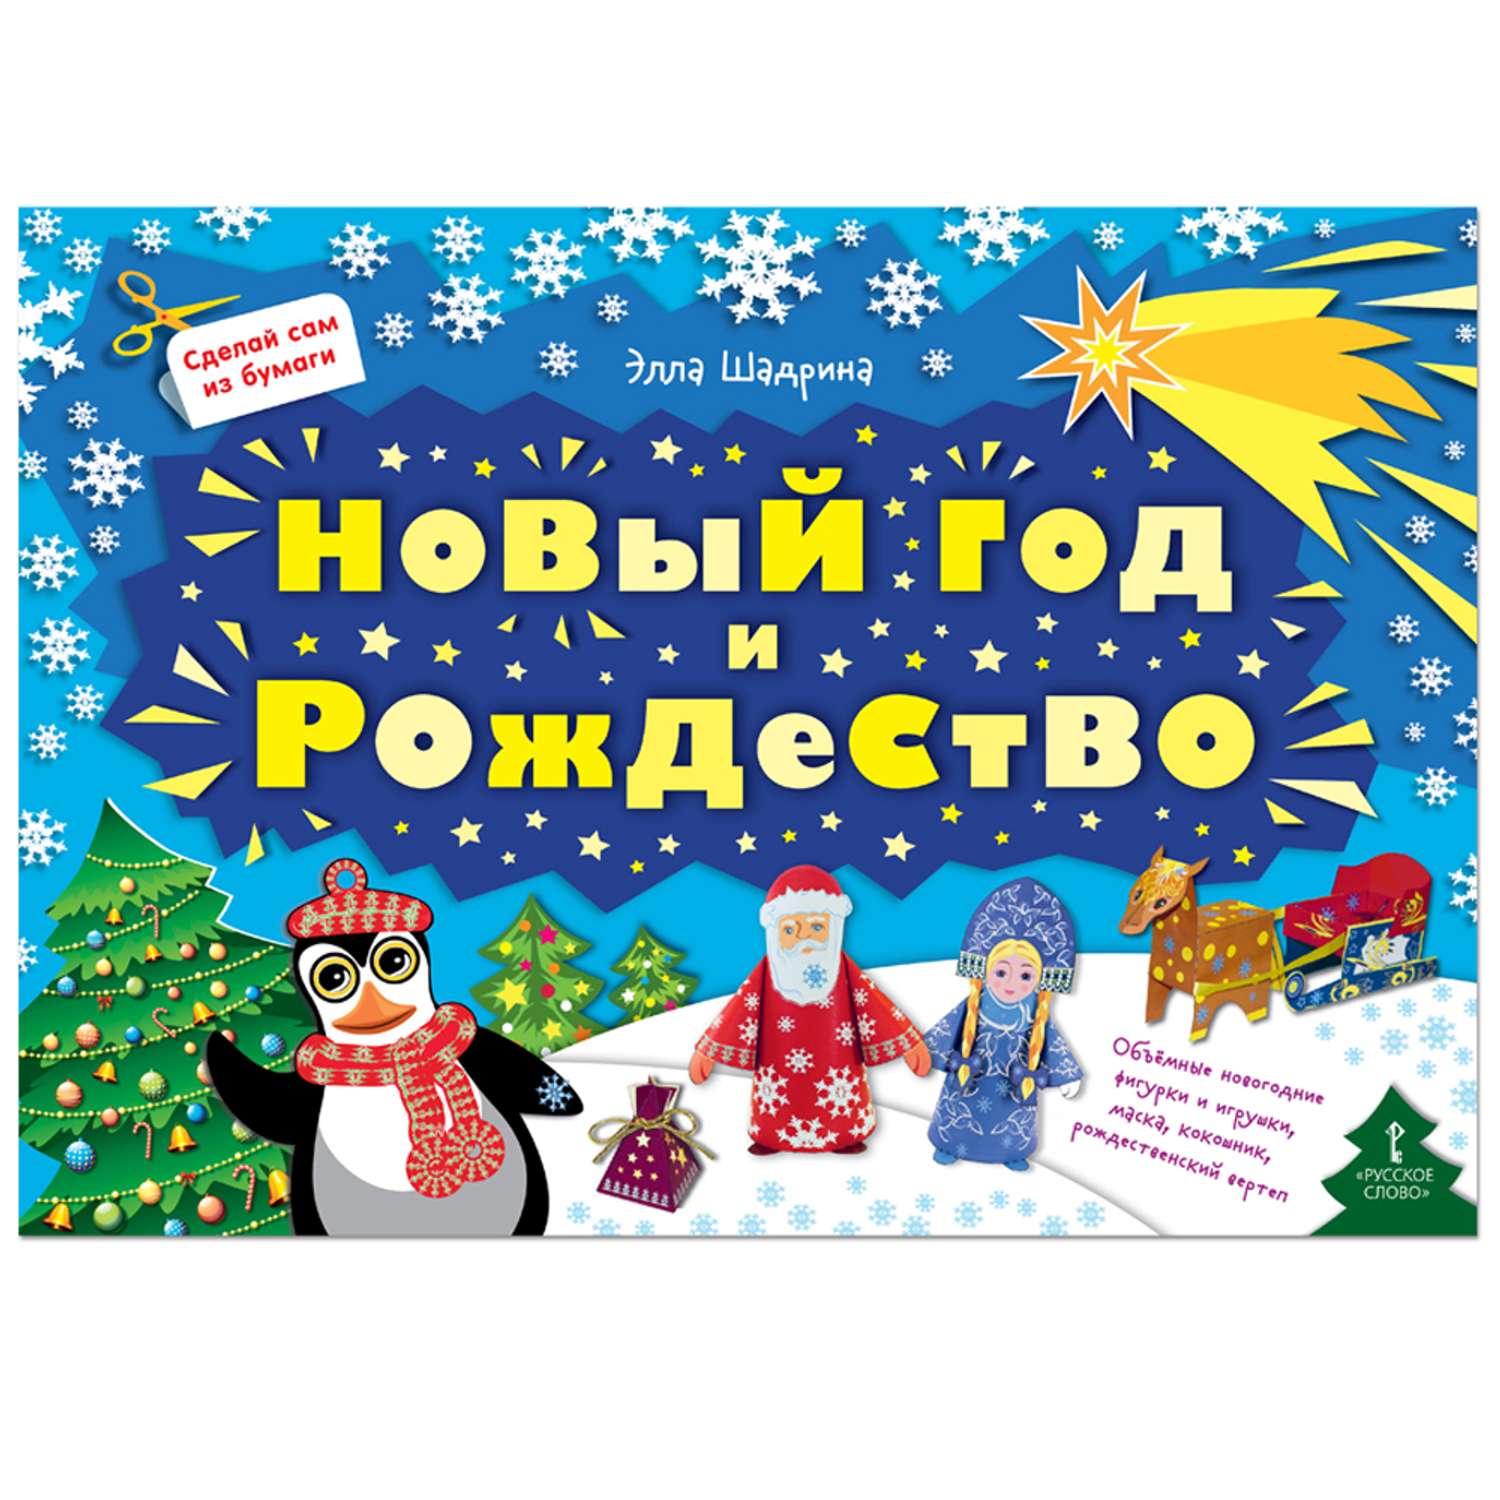 Книга Русское Слово Сделай сам из бумаги. Новый год и Рождество - фото 1